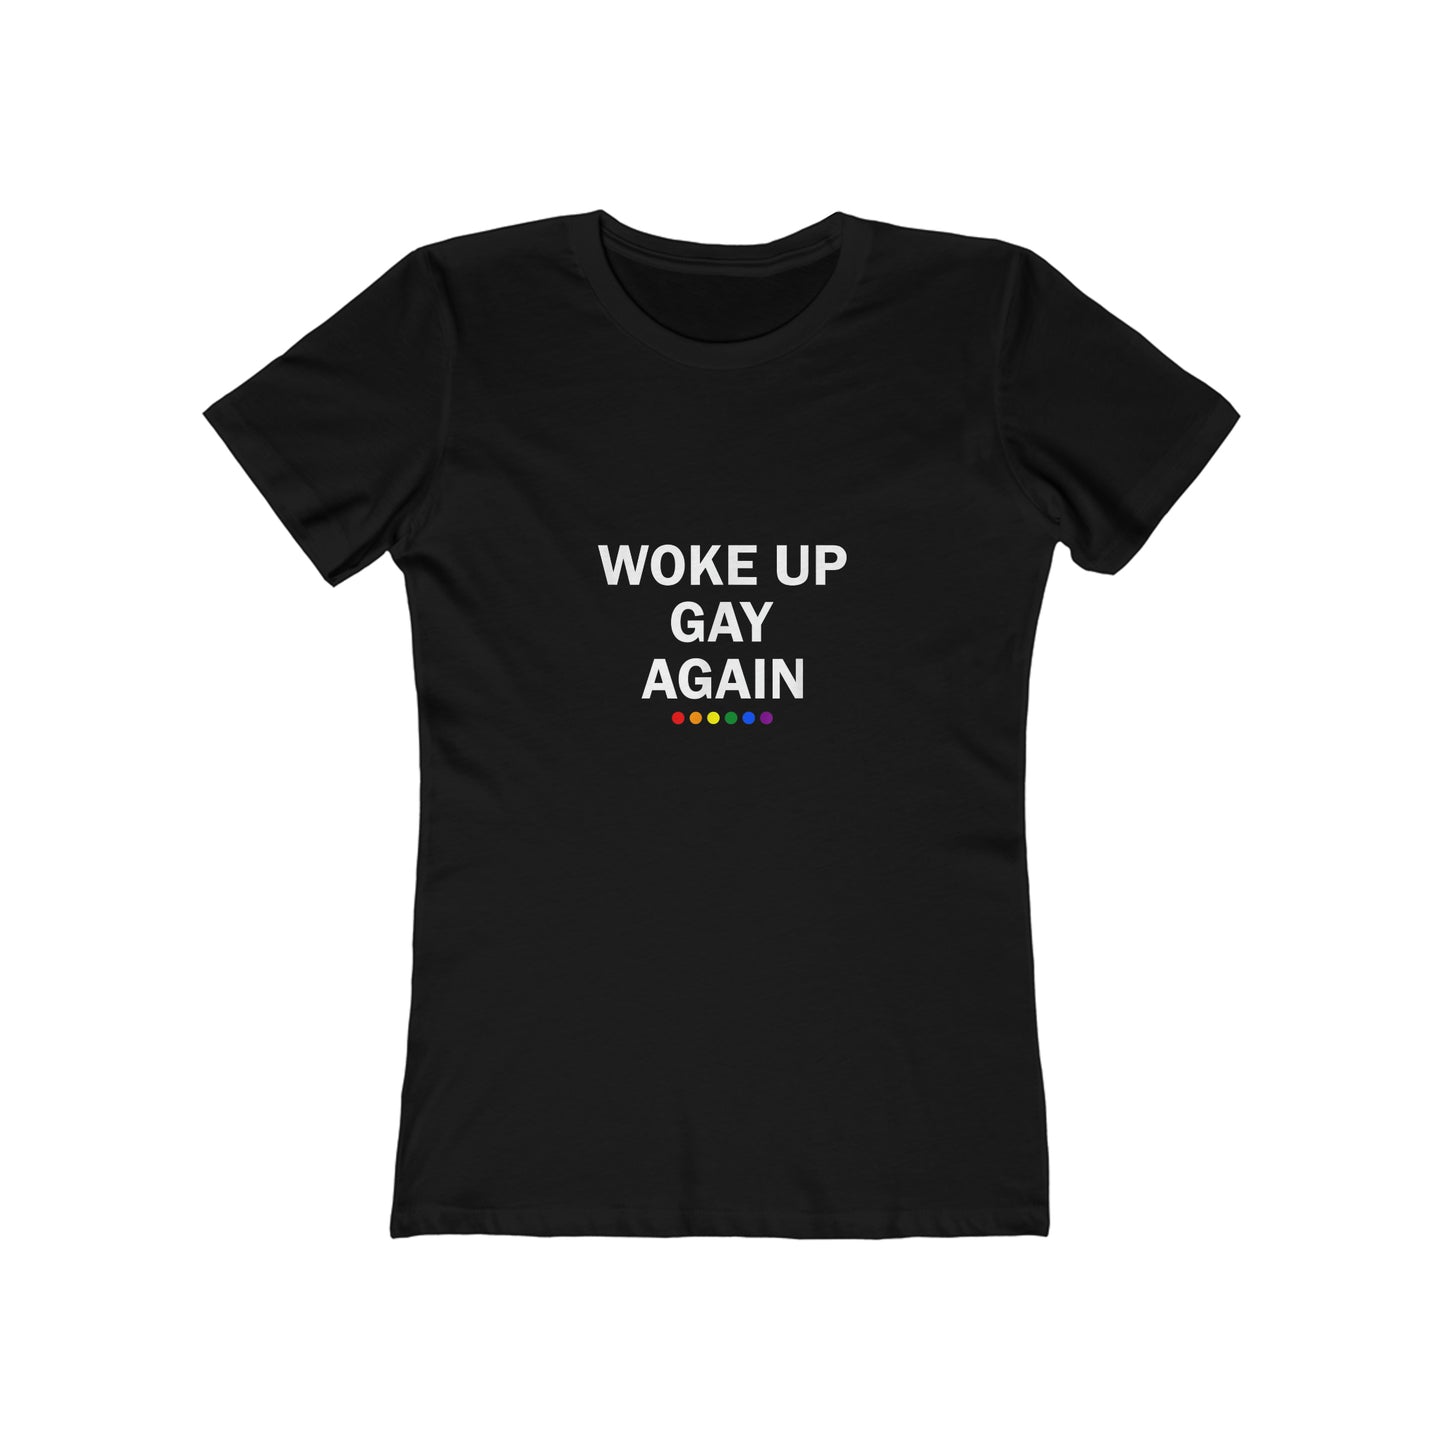 Woke Up Gay Again - Women's T-shirt